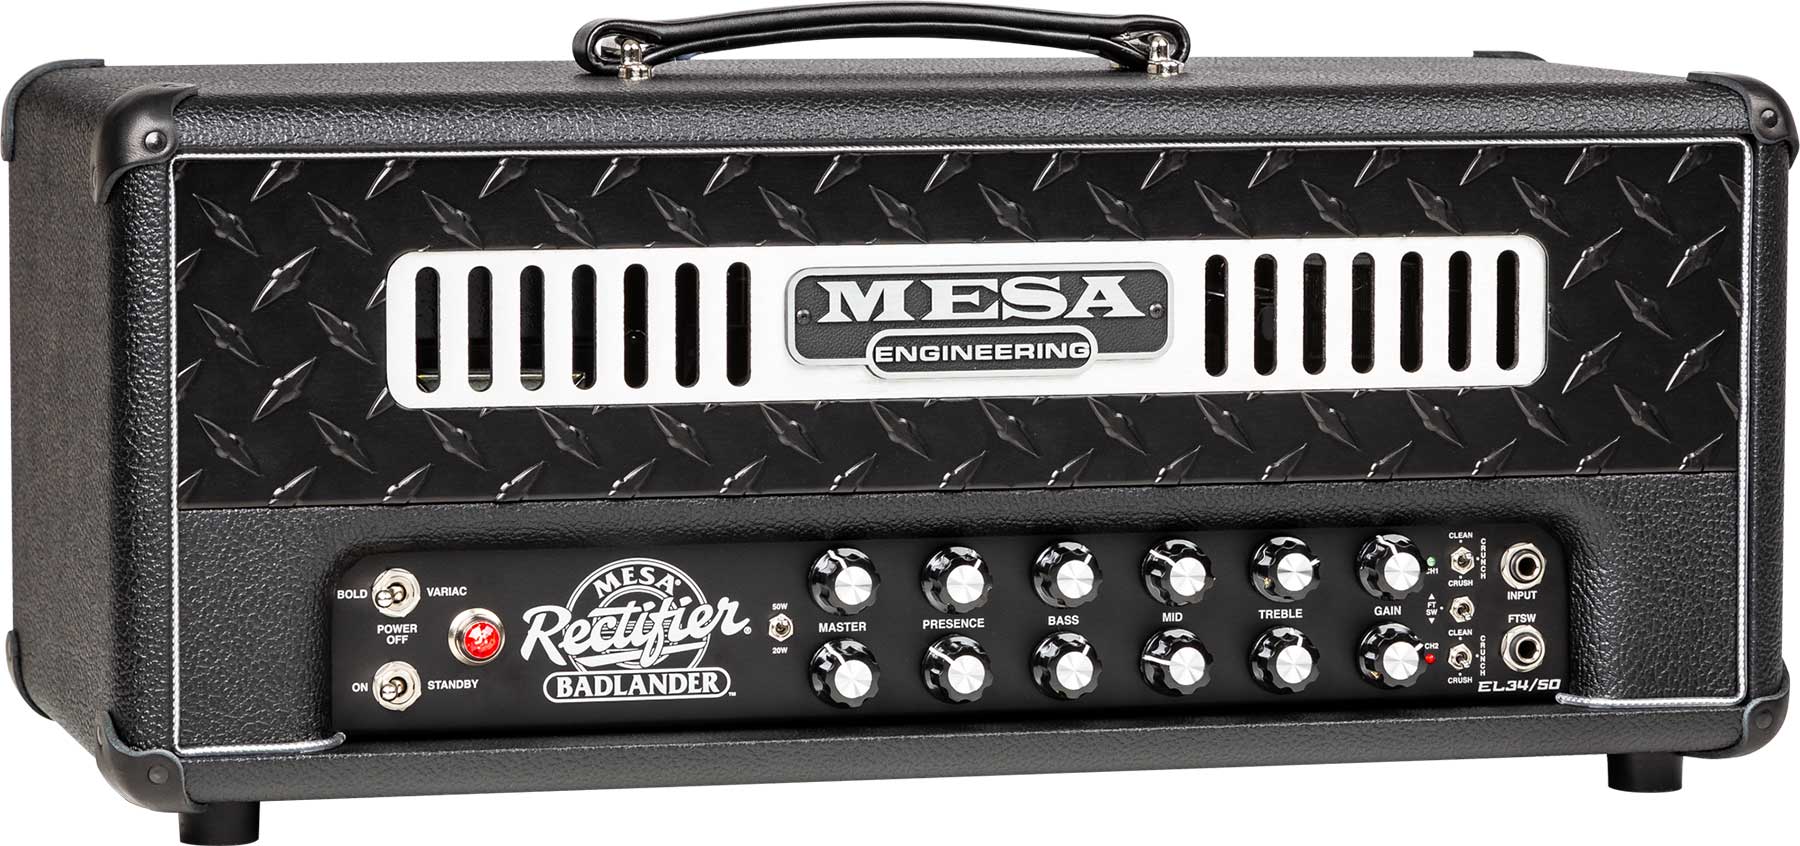 Mesa Boogie Badlander 50 Head 25/50w El34 Black Bronco - Electric guitar amp head - Variation 1